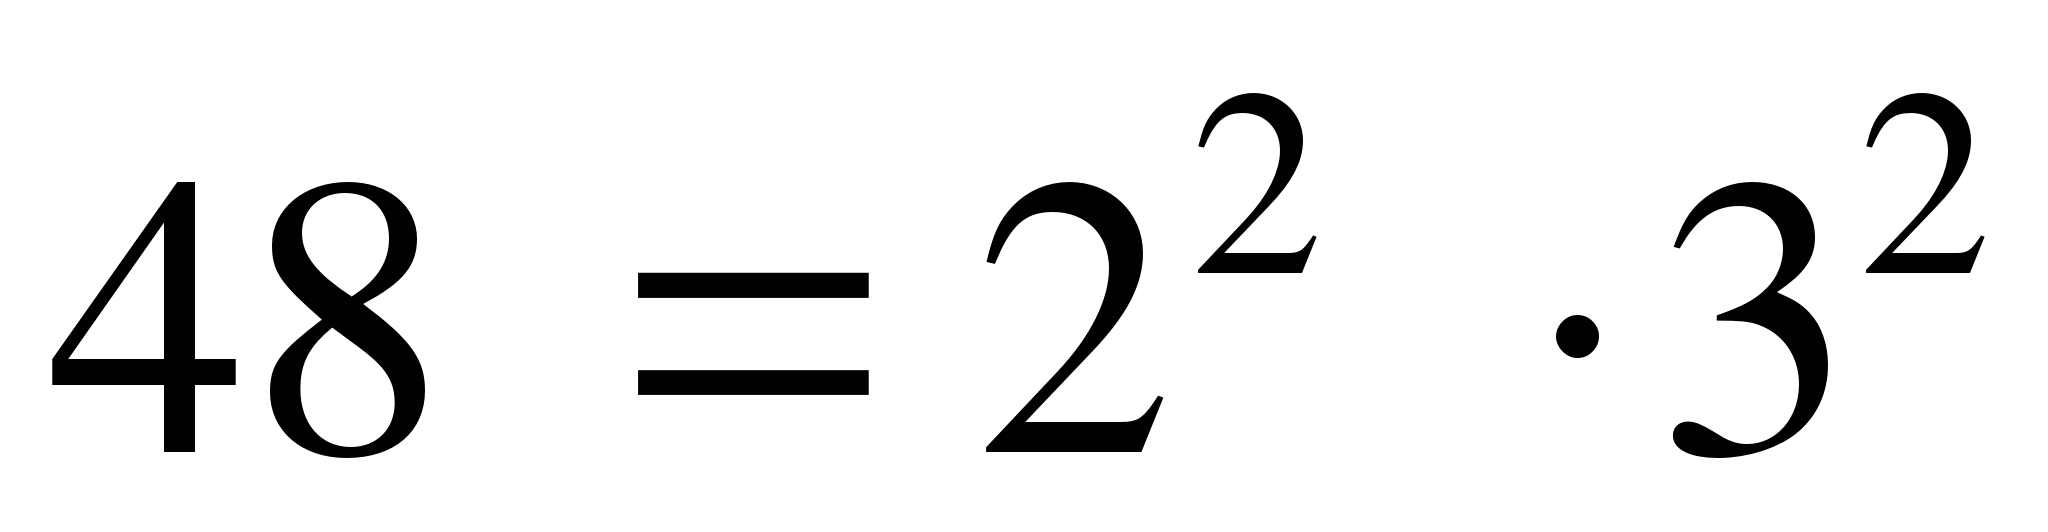 Конспект урока по математике на тему Решение упражнений по теме «Делимость натуральных чисел» (5 класс)